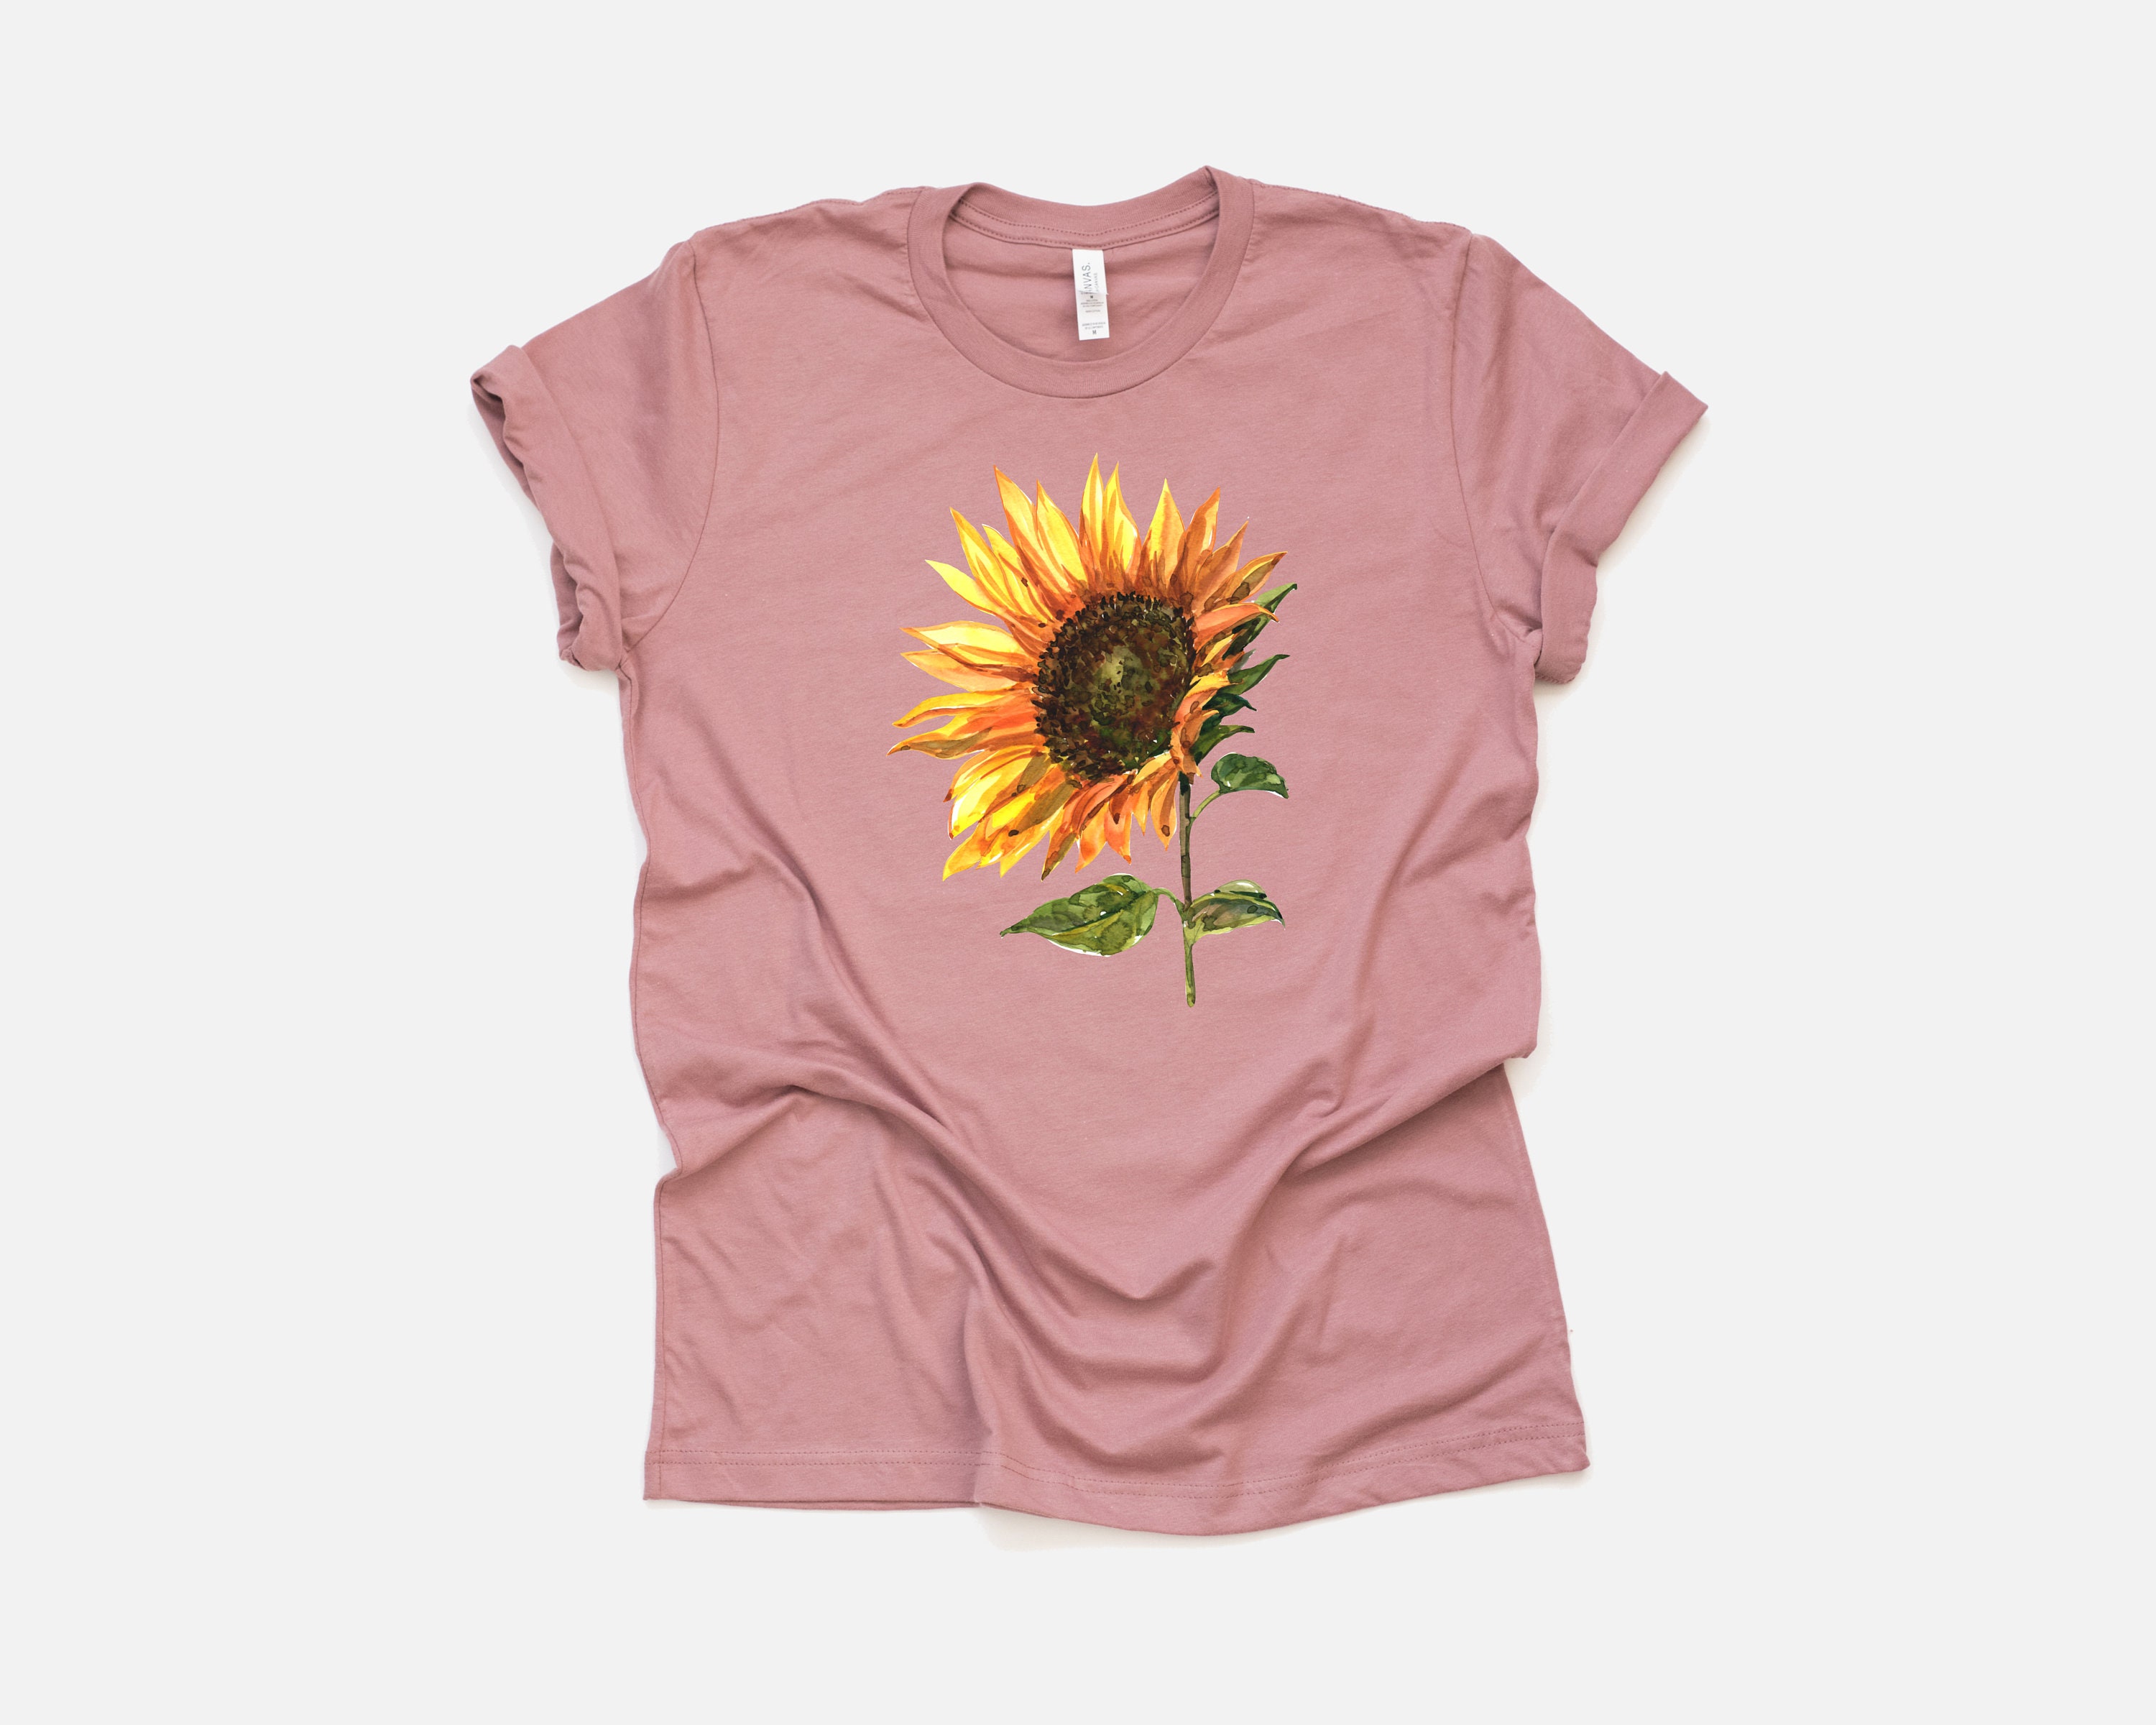 Sunflower Shirt Sunflower Graphic Sunflower Tee Graphic - Etsy